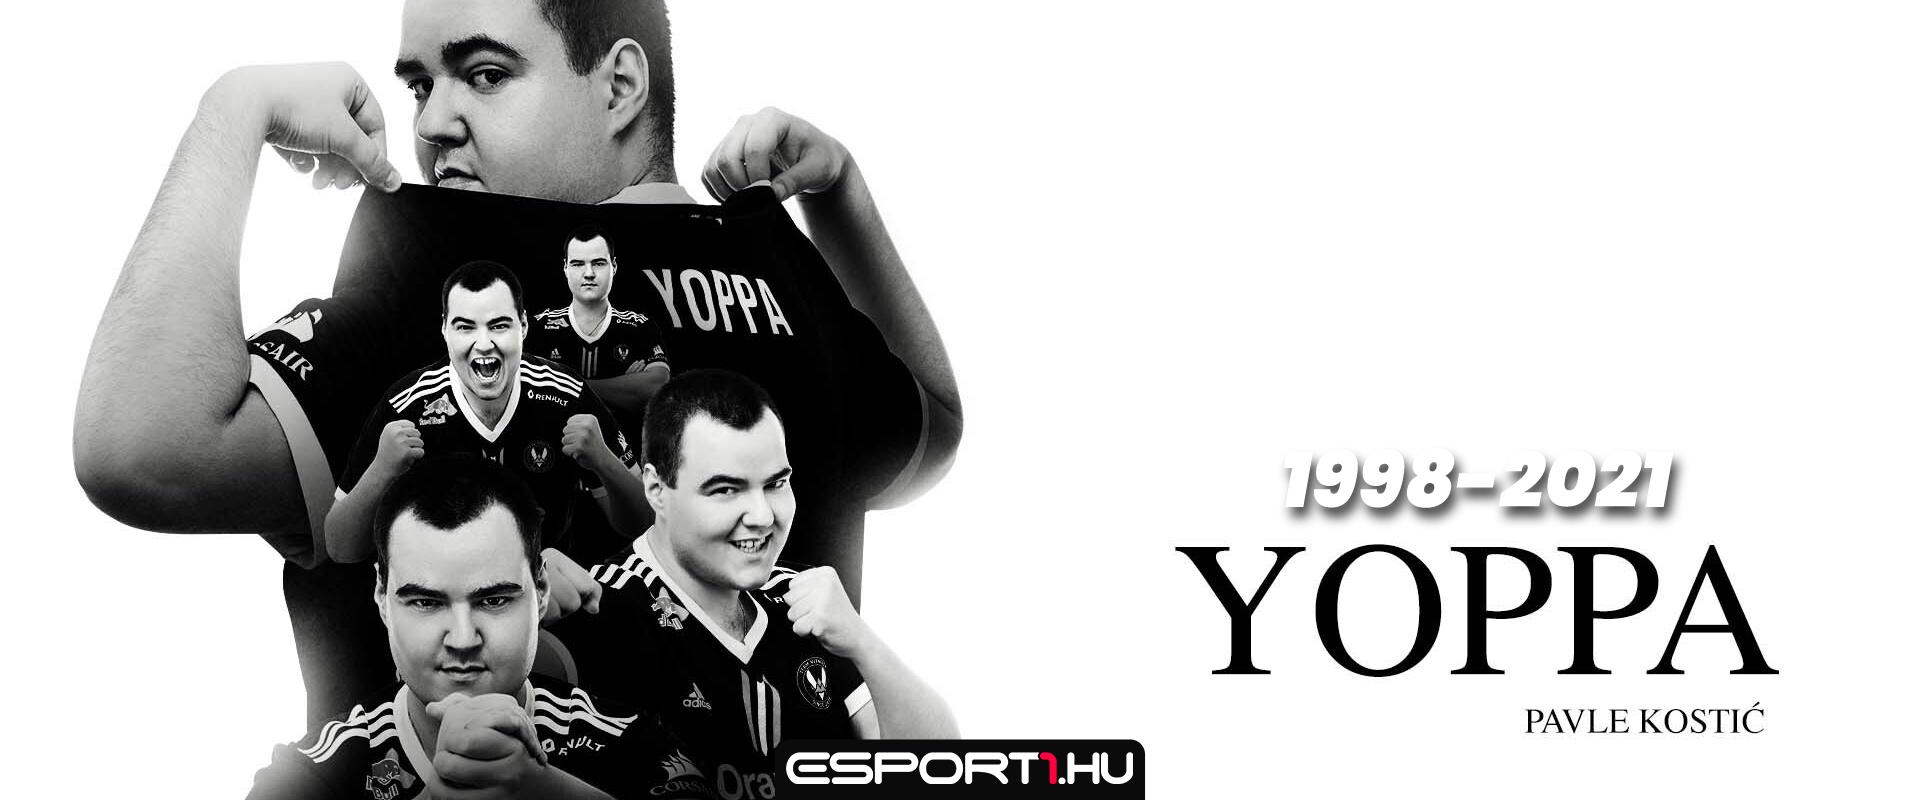 COVID-19-ben elhunyt Szerbia egyik legtehetségesebb LoL játékosa, Yoppa